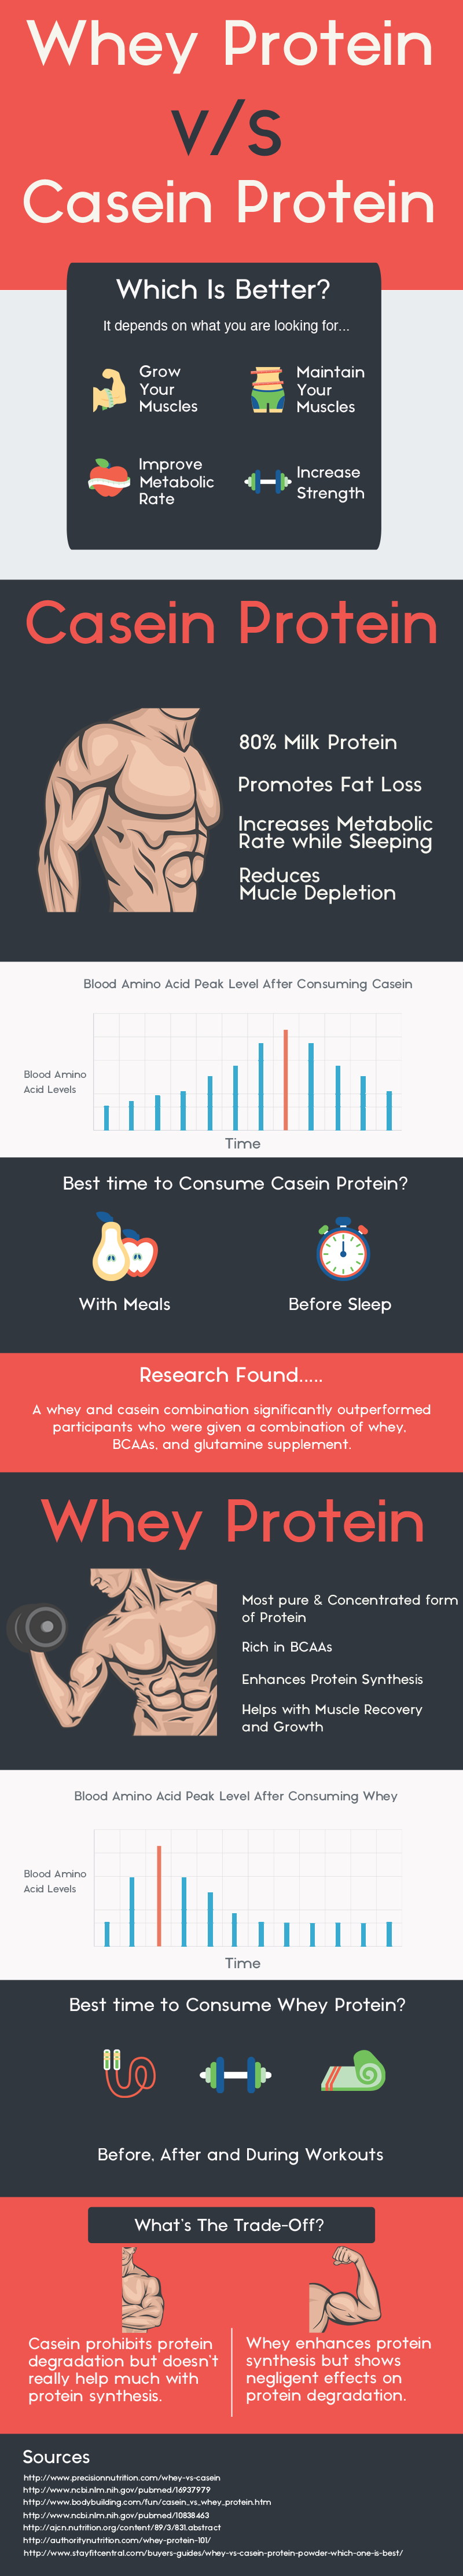 Protein-Comparison-Infographic